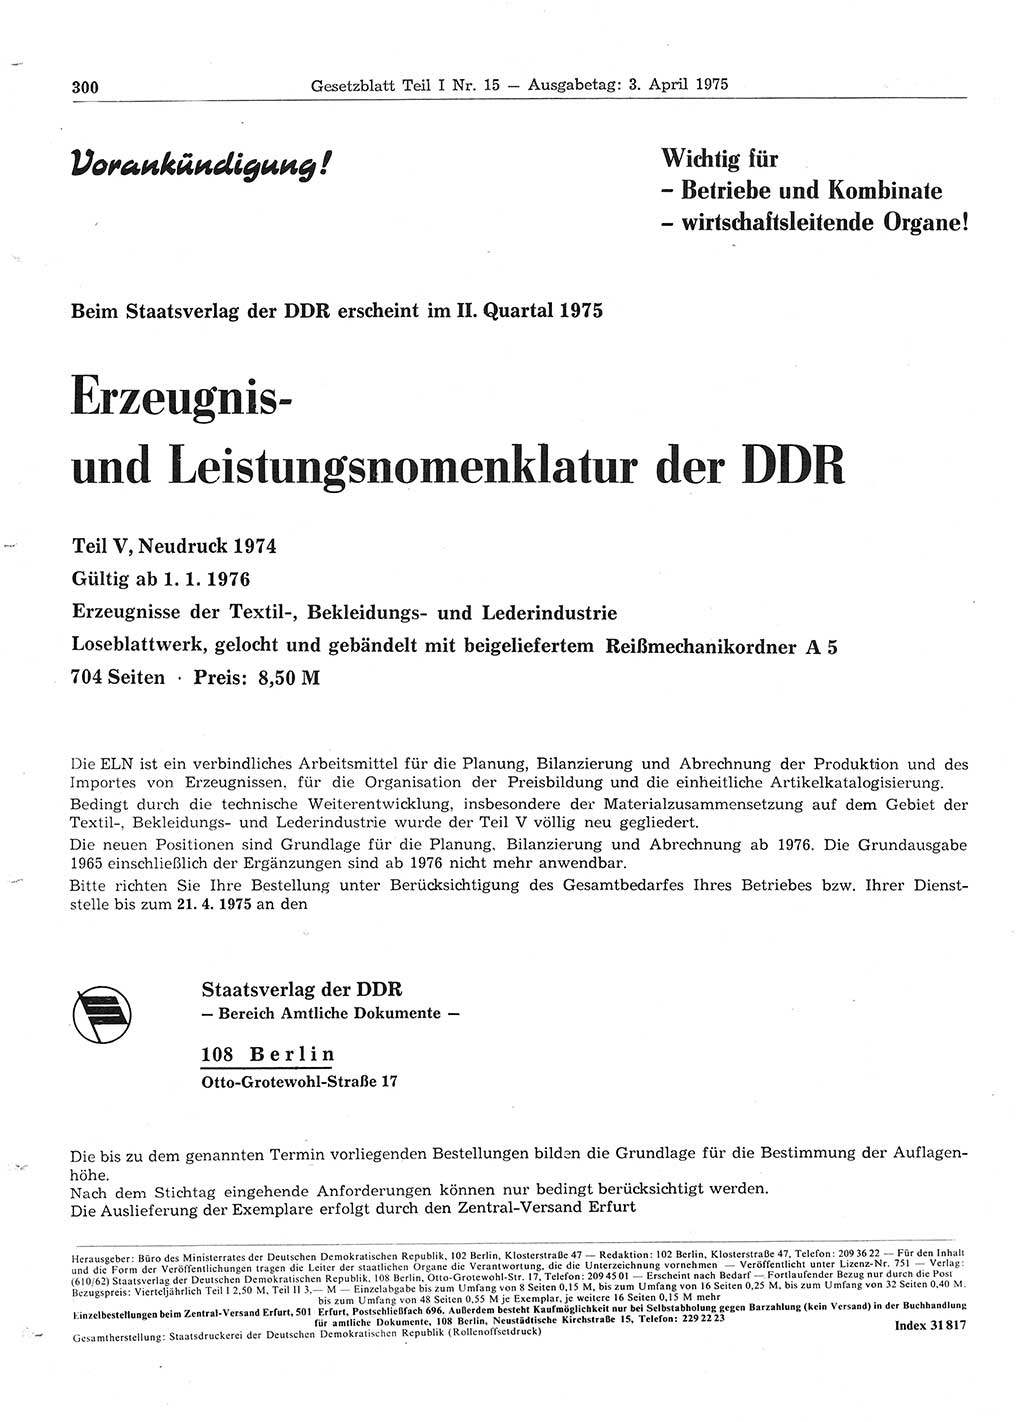 Gesetzblatt (GBl.) der Deutschen Demokratischen Republik (DDR) Teil Ⅰ 1975, Seite 300 (GBl. DDR Ⅰ 1975, S. 300)